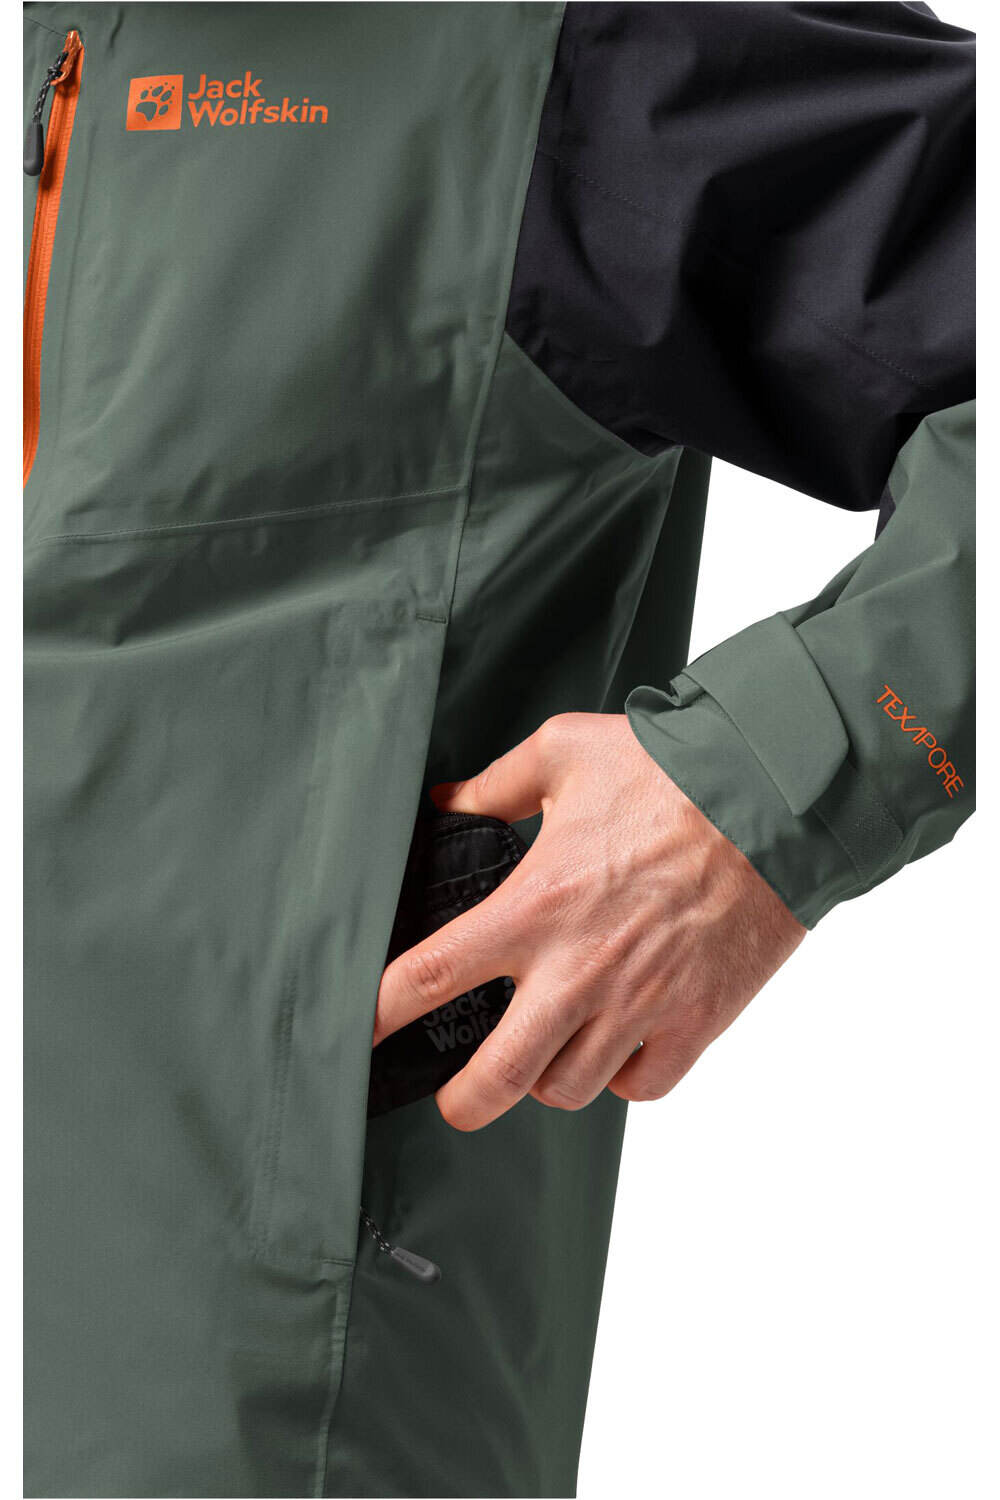 Jack Wolfskin chaqueta impermeable hombre EAGLE PEAK 2L JKT M 03